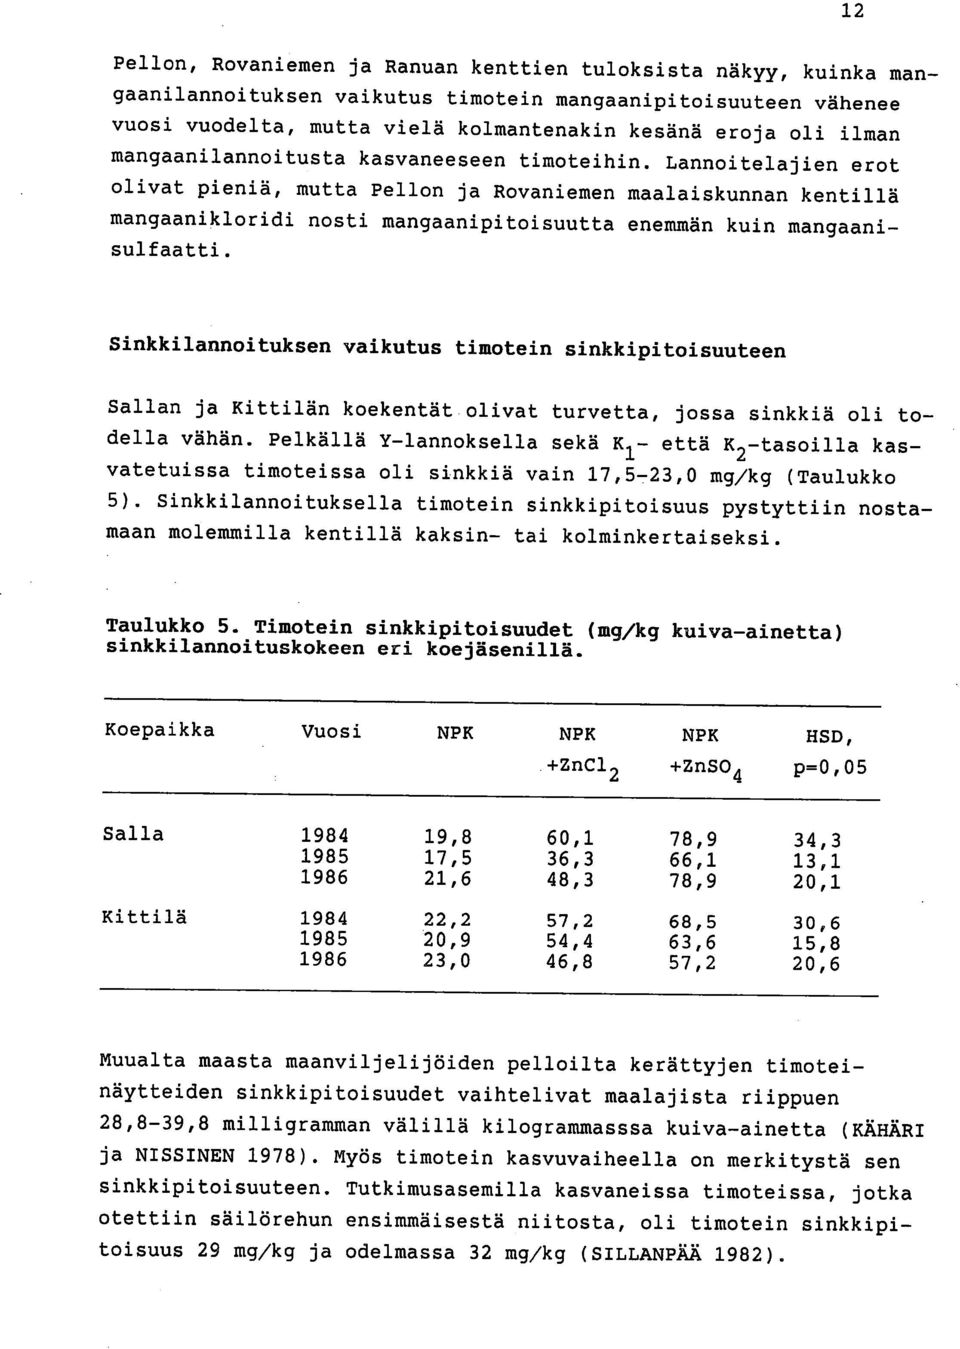 Lannoitelajien erot olivat pieniä, mutta Pellon ja Rovaniemen maalaiskunnan kentillä mangaanikloridi nosti mangaanipitoisuutta enemmän kuin mangaanisulfaatti.